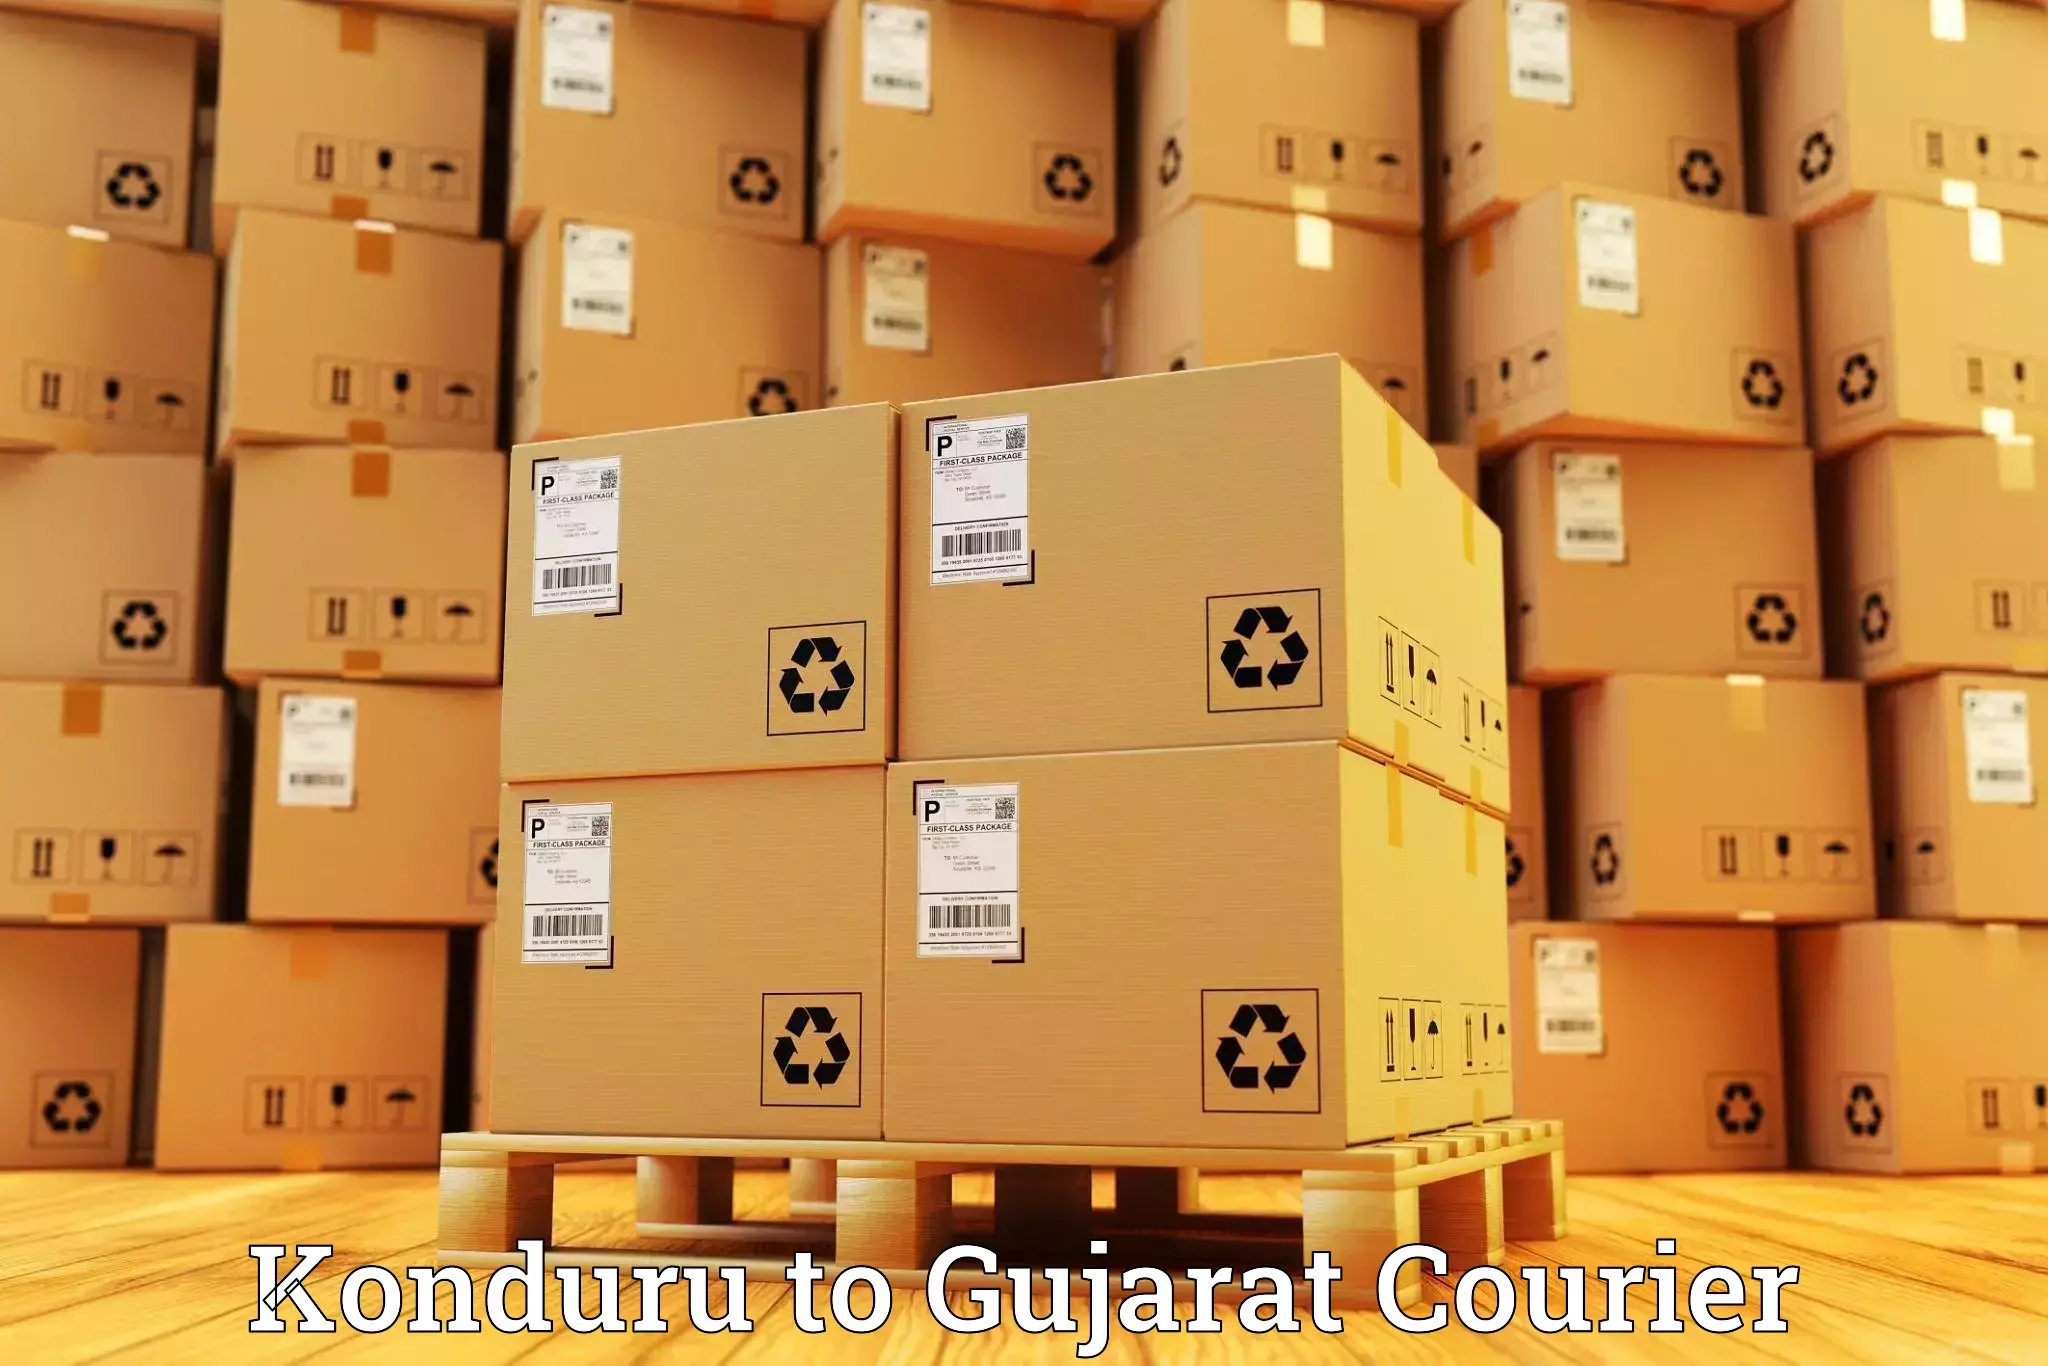 Comprehensive shipping network Konduru to Lunawada